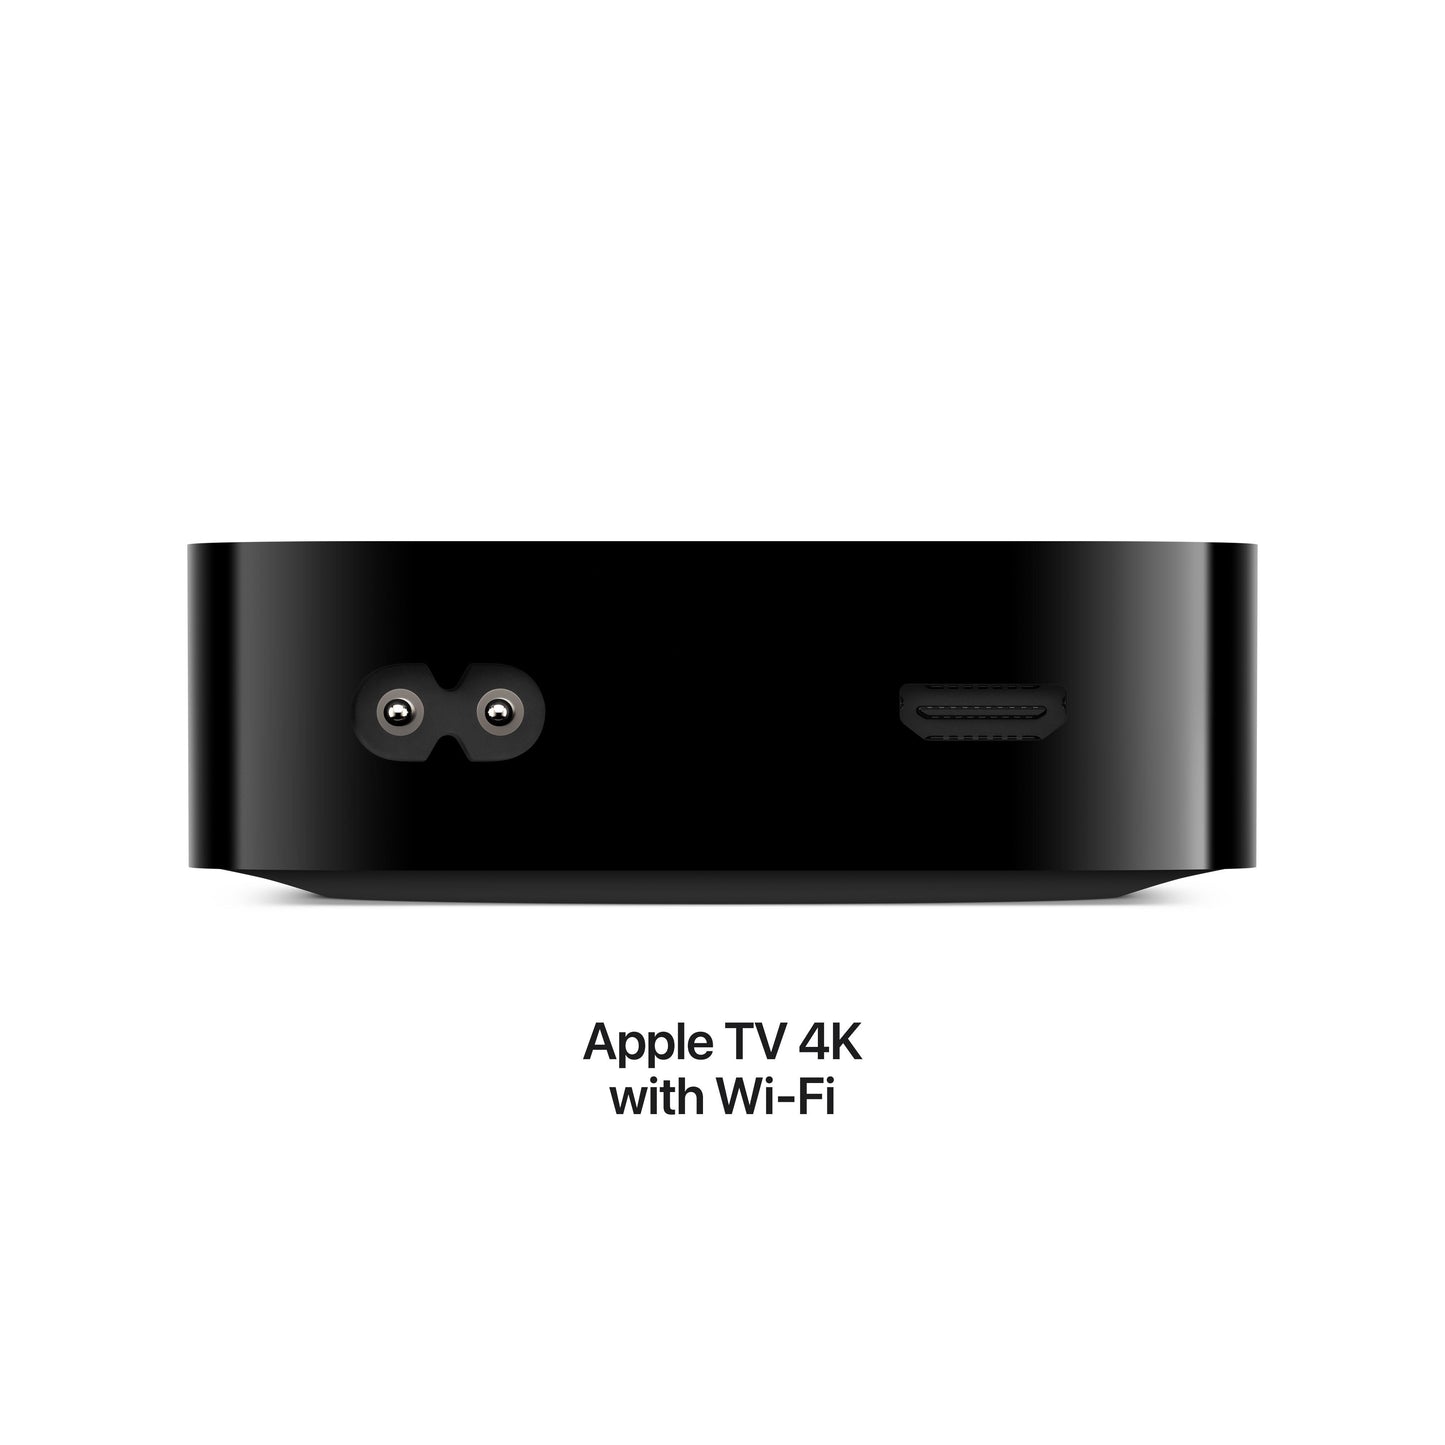 Apple TV 4K Wi_Fi + Ethernet with 128GB storage